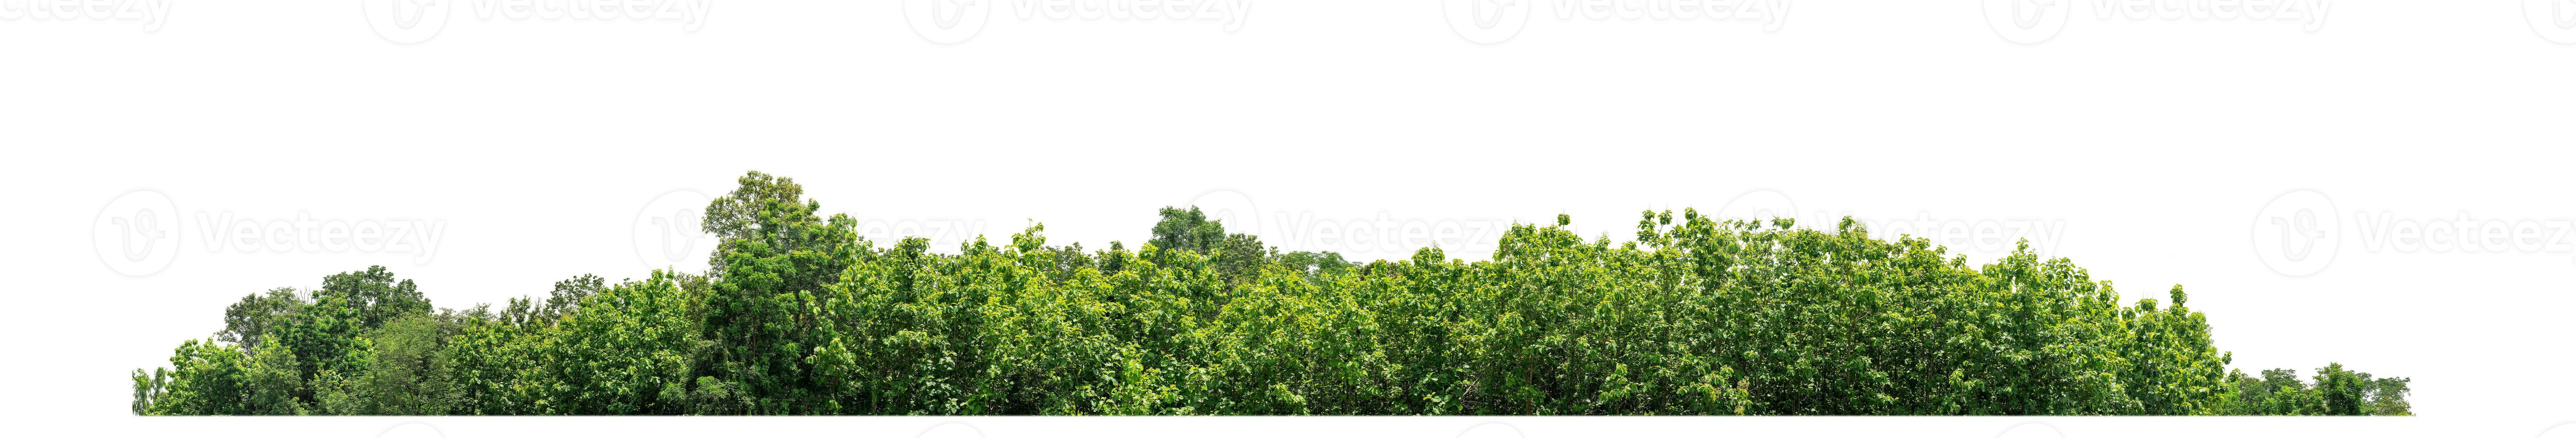 árboles verdes aislados sobre fondo blanco. son bosques y follaje en verano tanto para impresión como para páginas web con ruta de corte y canal alfa foto